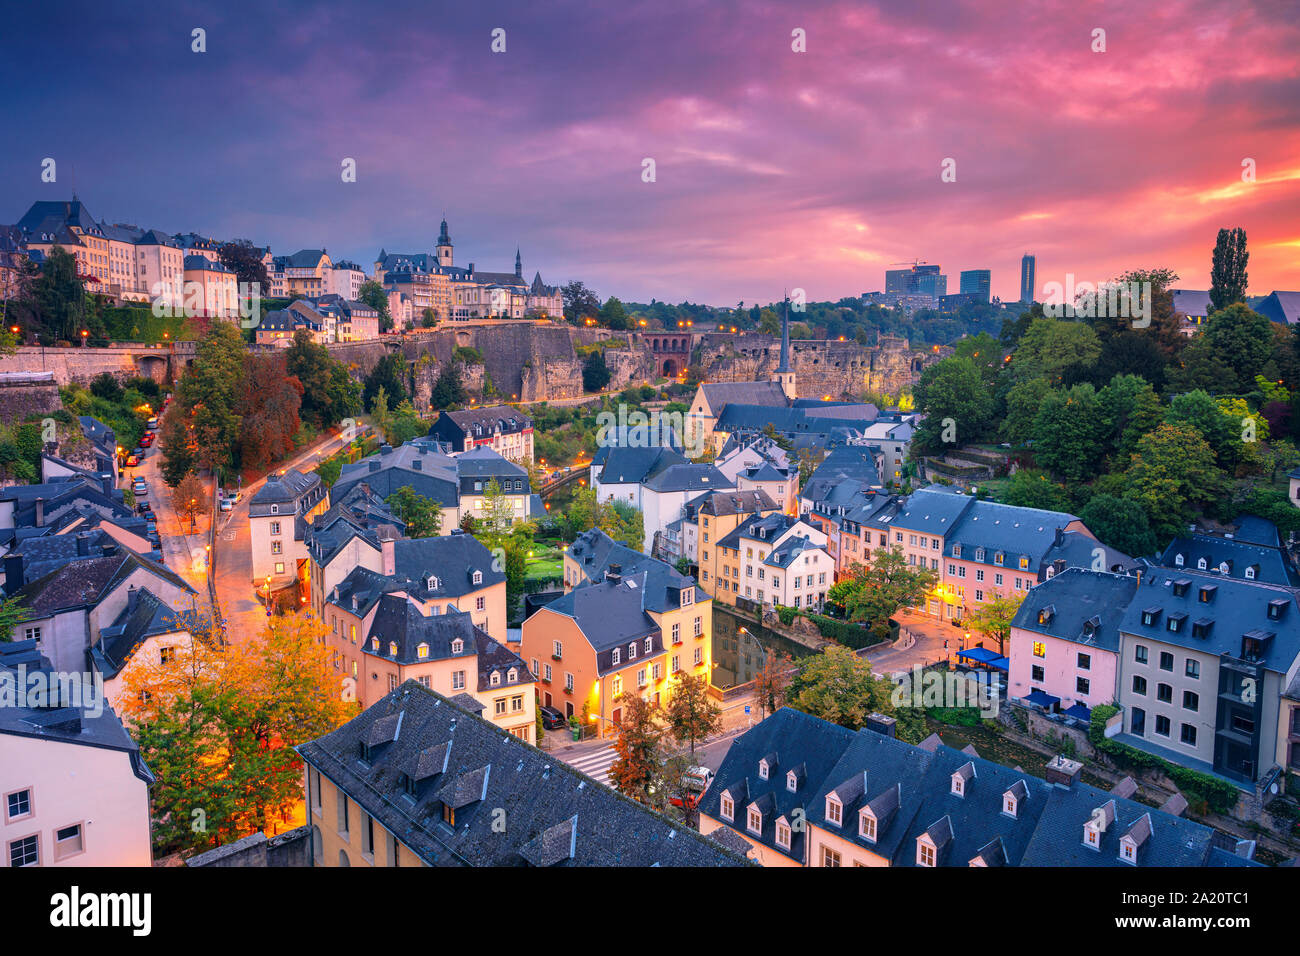 Die Stadt Luxemburg, Luxemburg. Antenne Stadtbild Bild der Altstadt Luxemburg Skyline der Stadt während der schönen Sonnenaufgang. Stockfoto